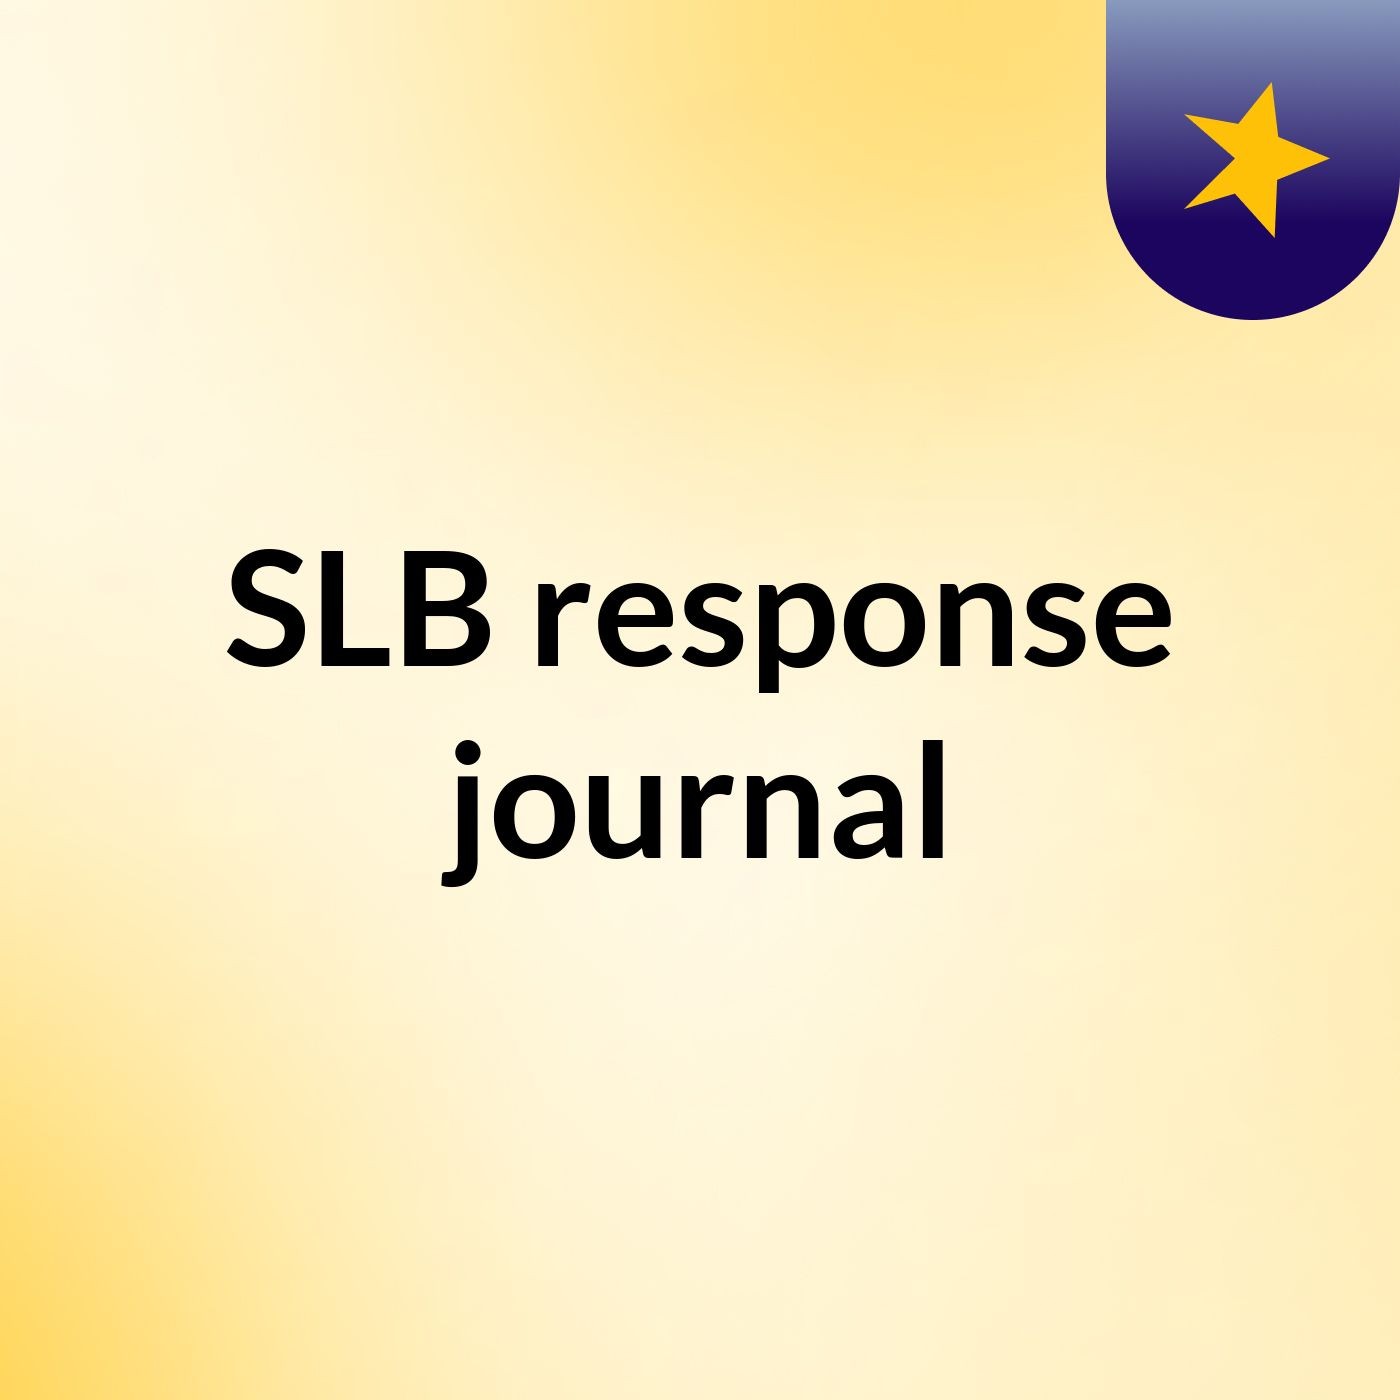 Episode 3 - SLB response journal